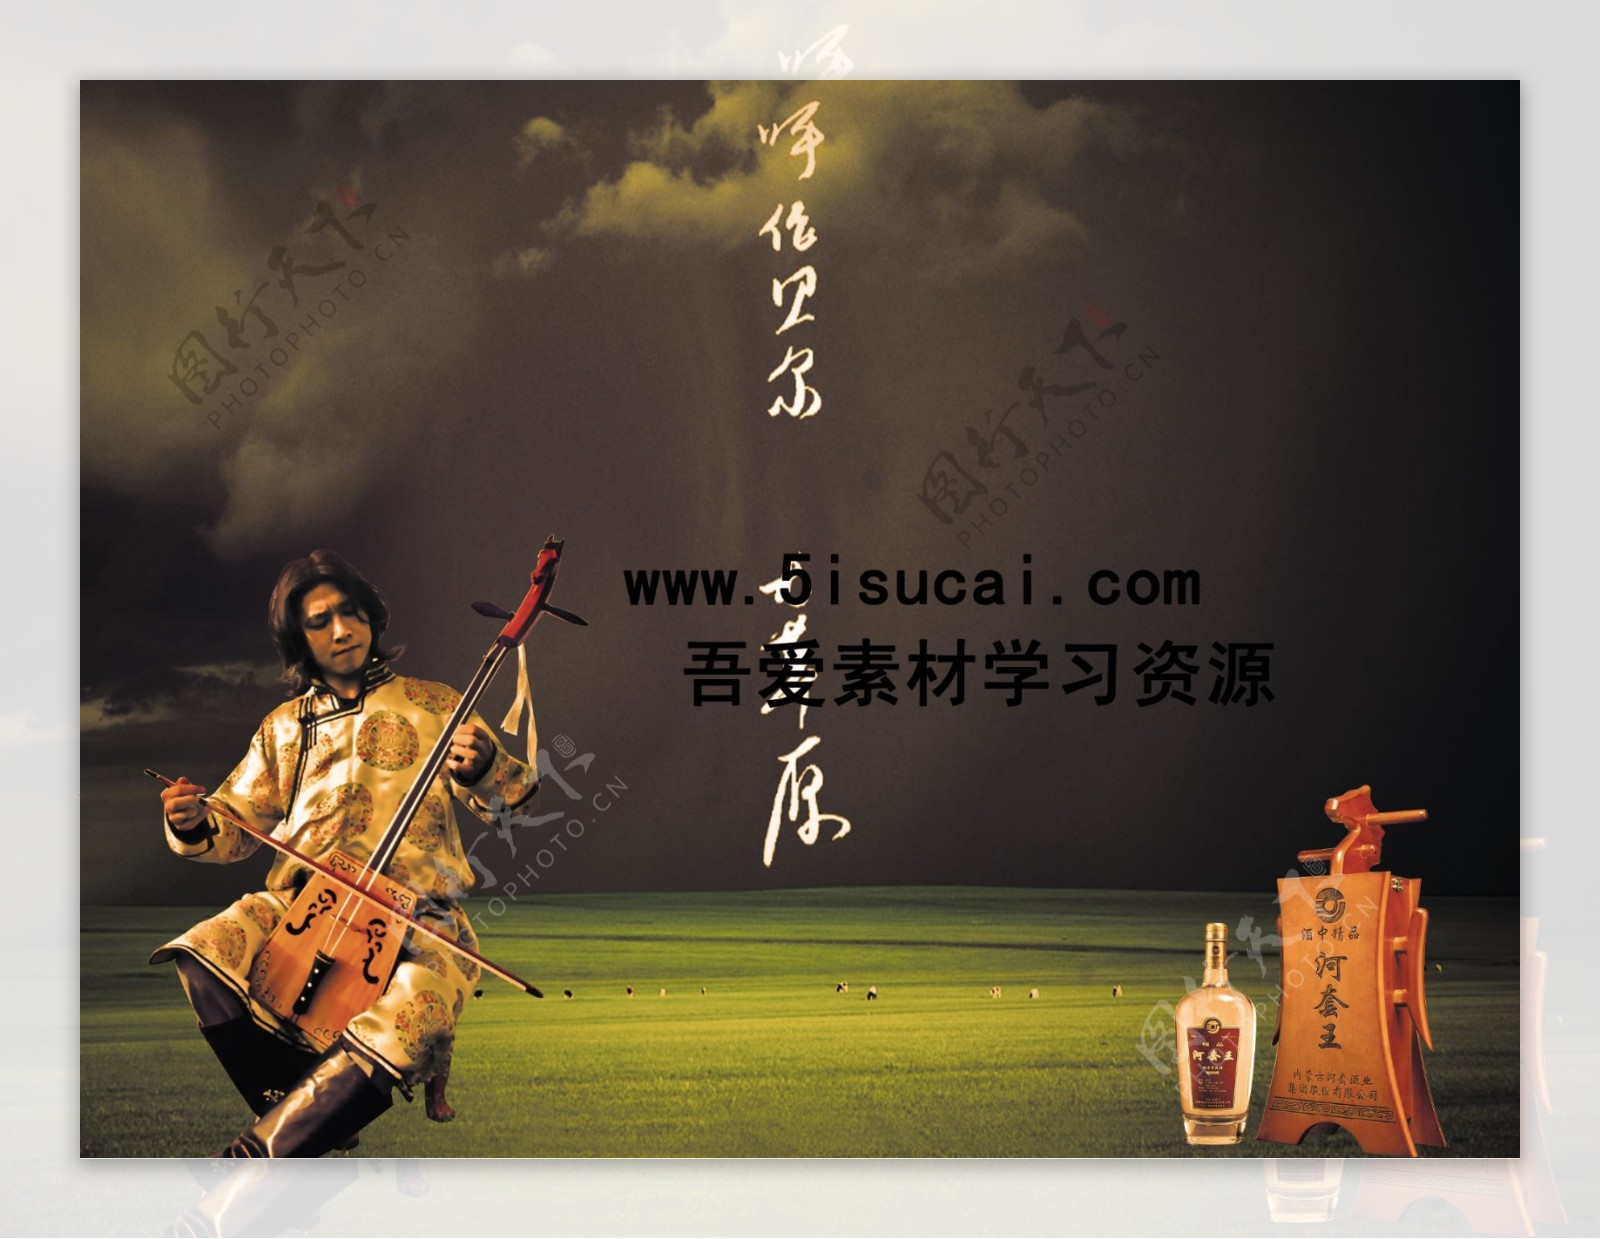 蒙古大草原广告背景图3